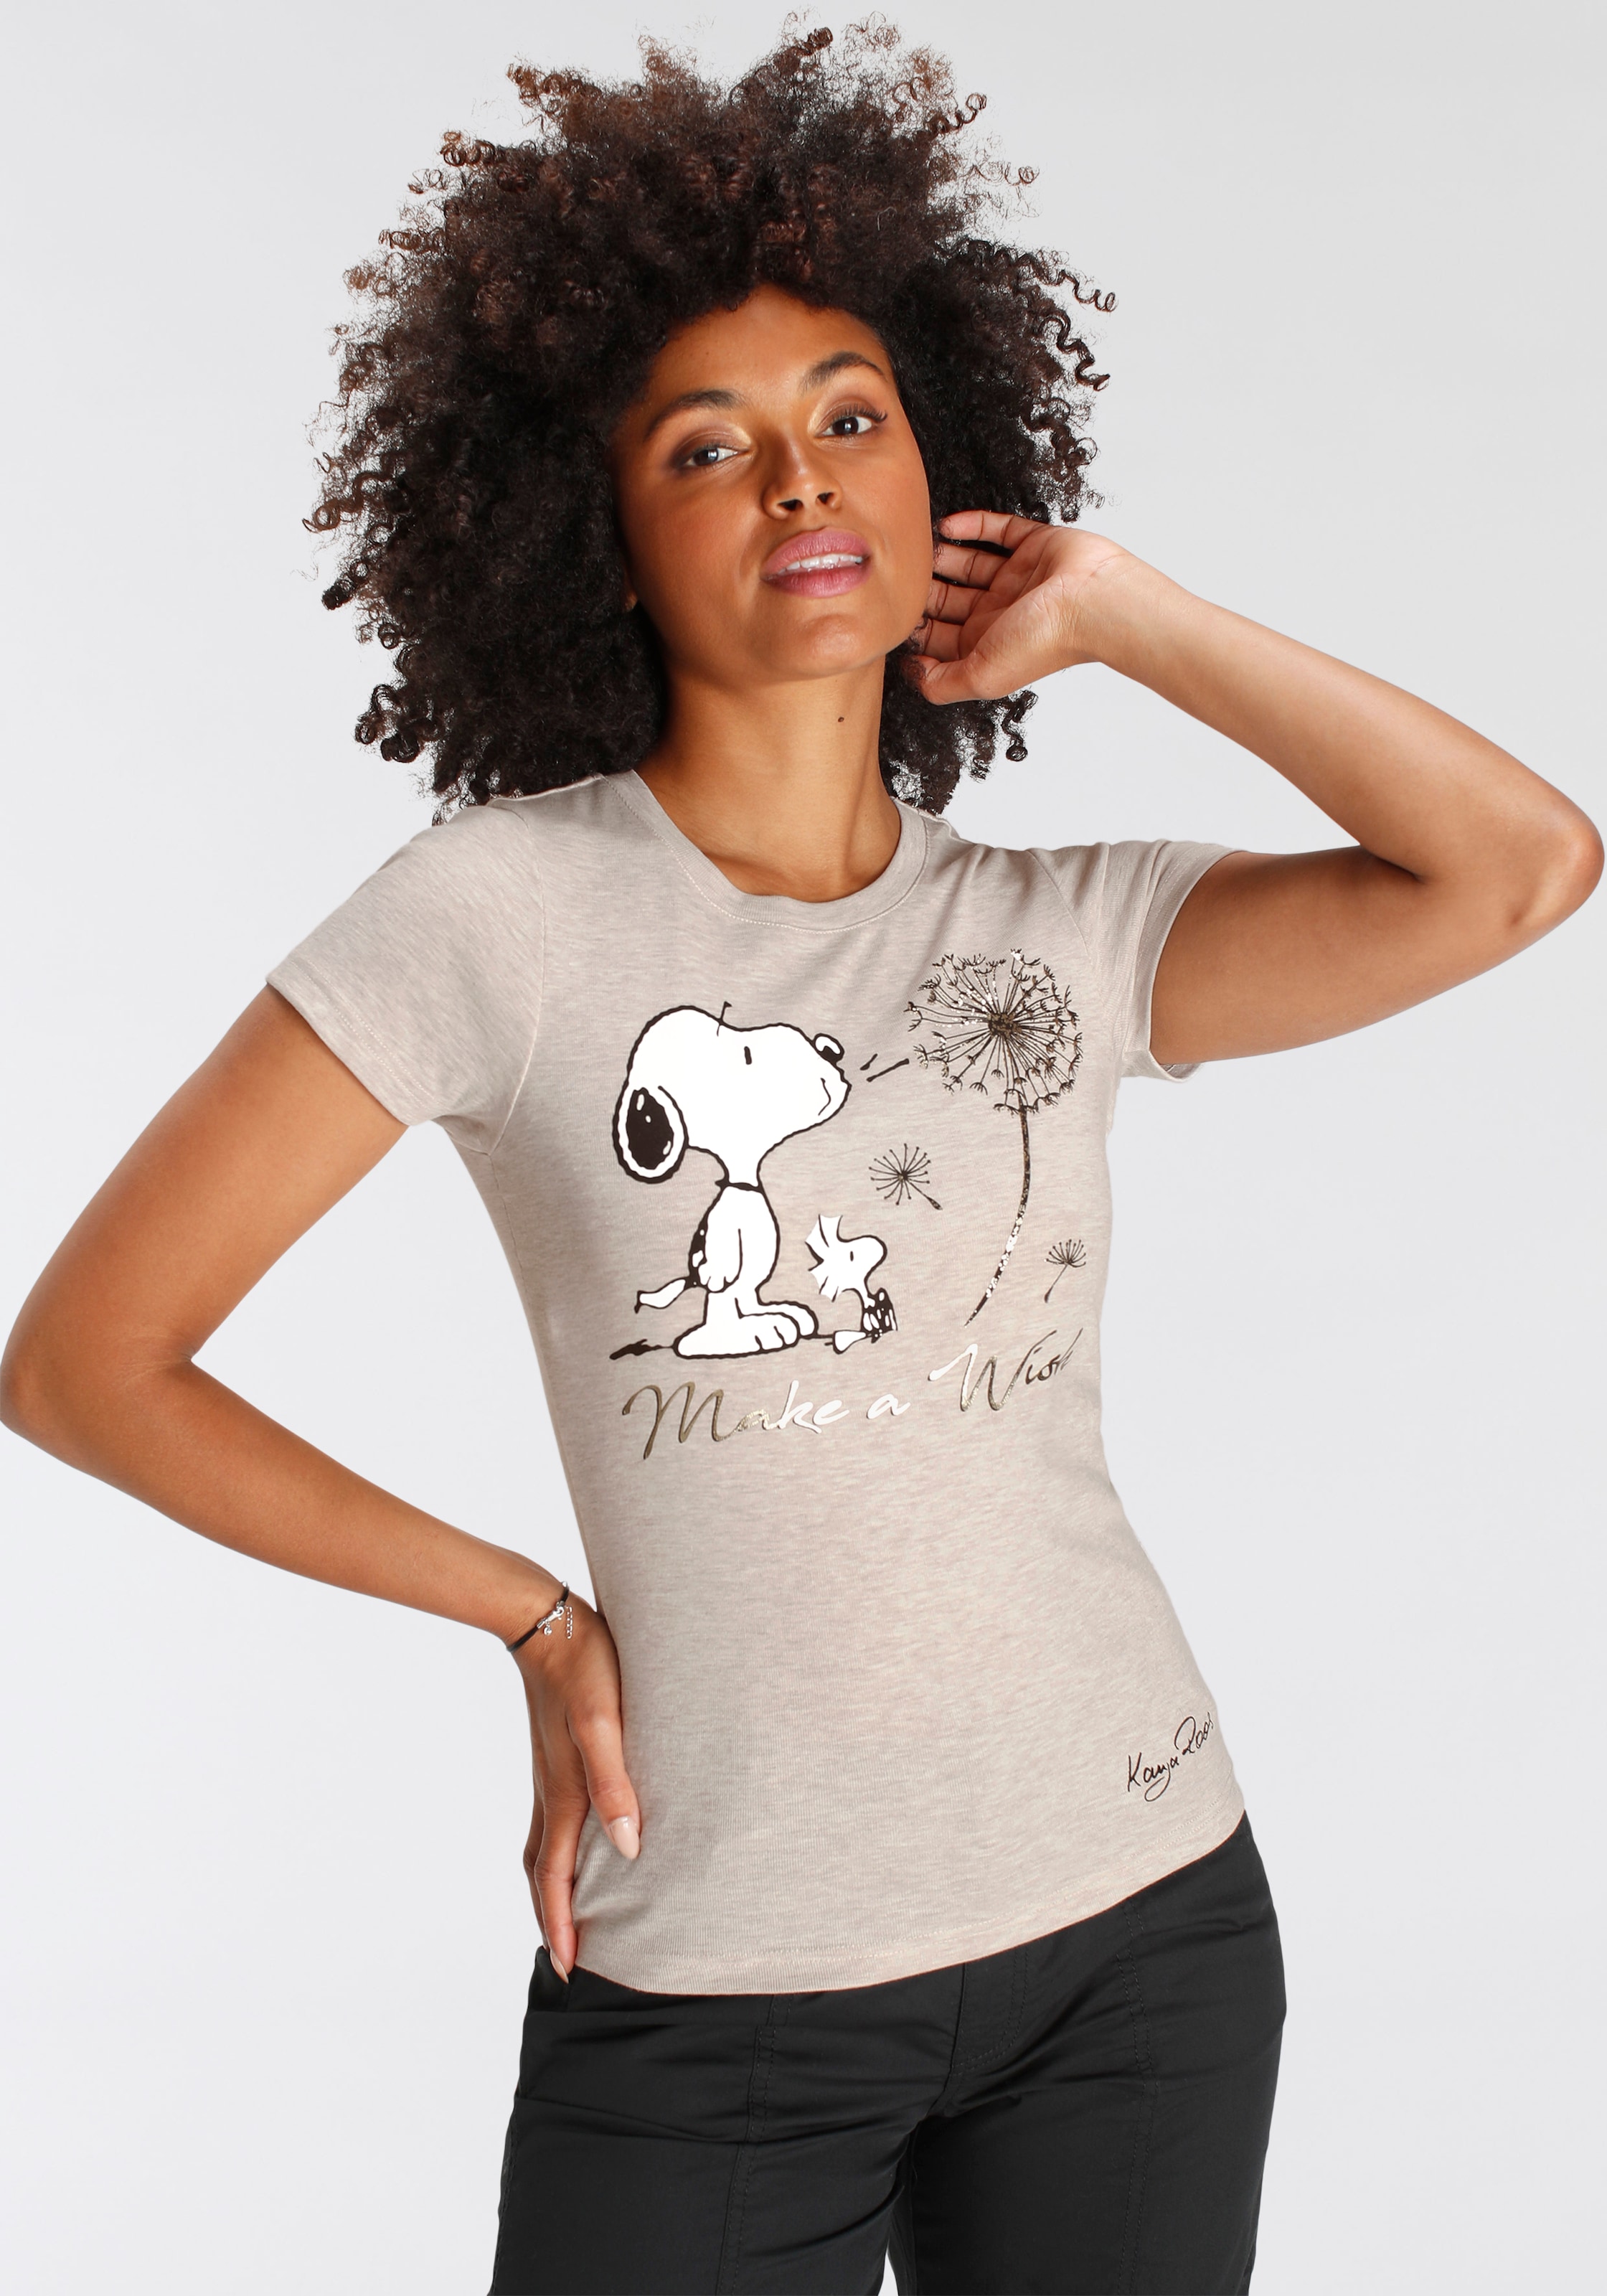 NEUE KangaROOS KOLLEKTION I\'m Kurzarmshirt, Originaldesign mit Snoopy | walking Print lizensiertem - shoppen